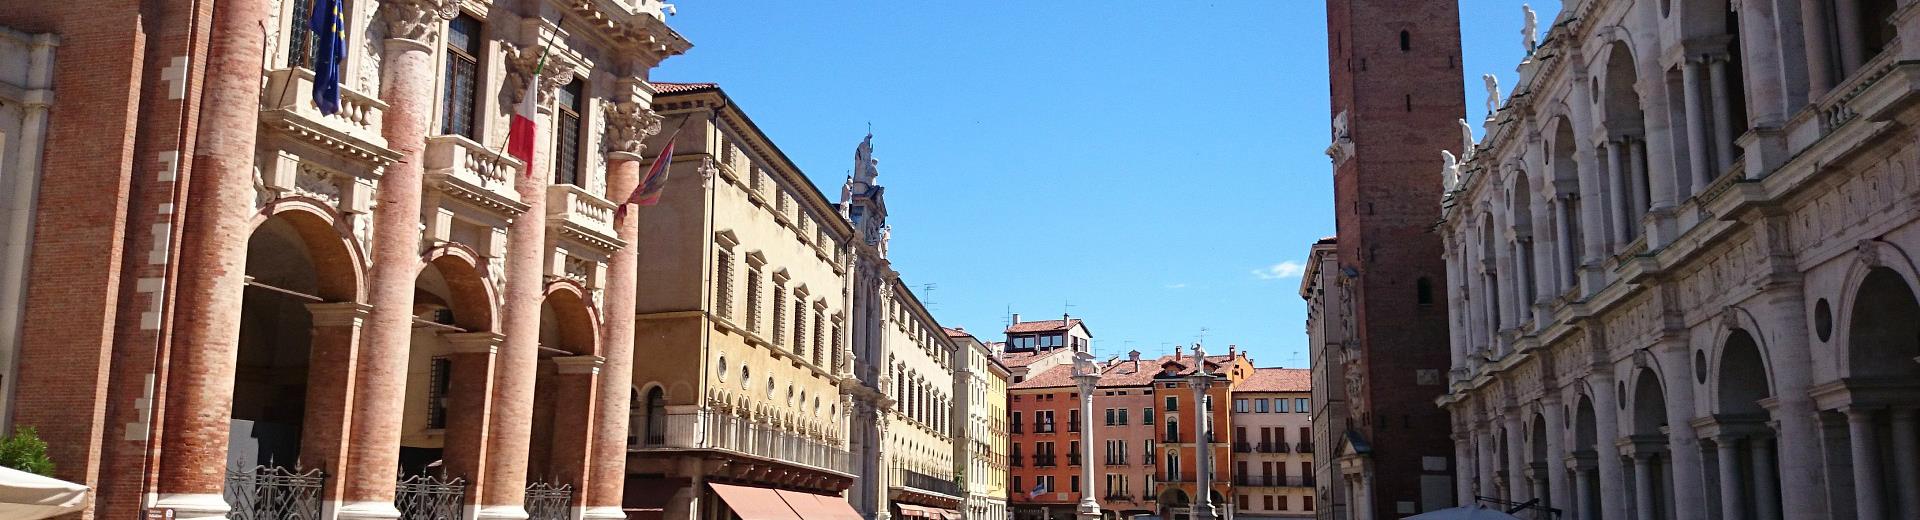 Scopri le ricchezze artistiche di Vicenza: prenota Hotel Turismo, 4 stelle a San Martino Buon Albergo, a soli 30 minuti da Vicenza!